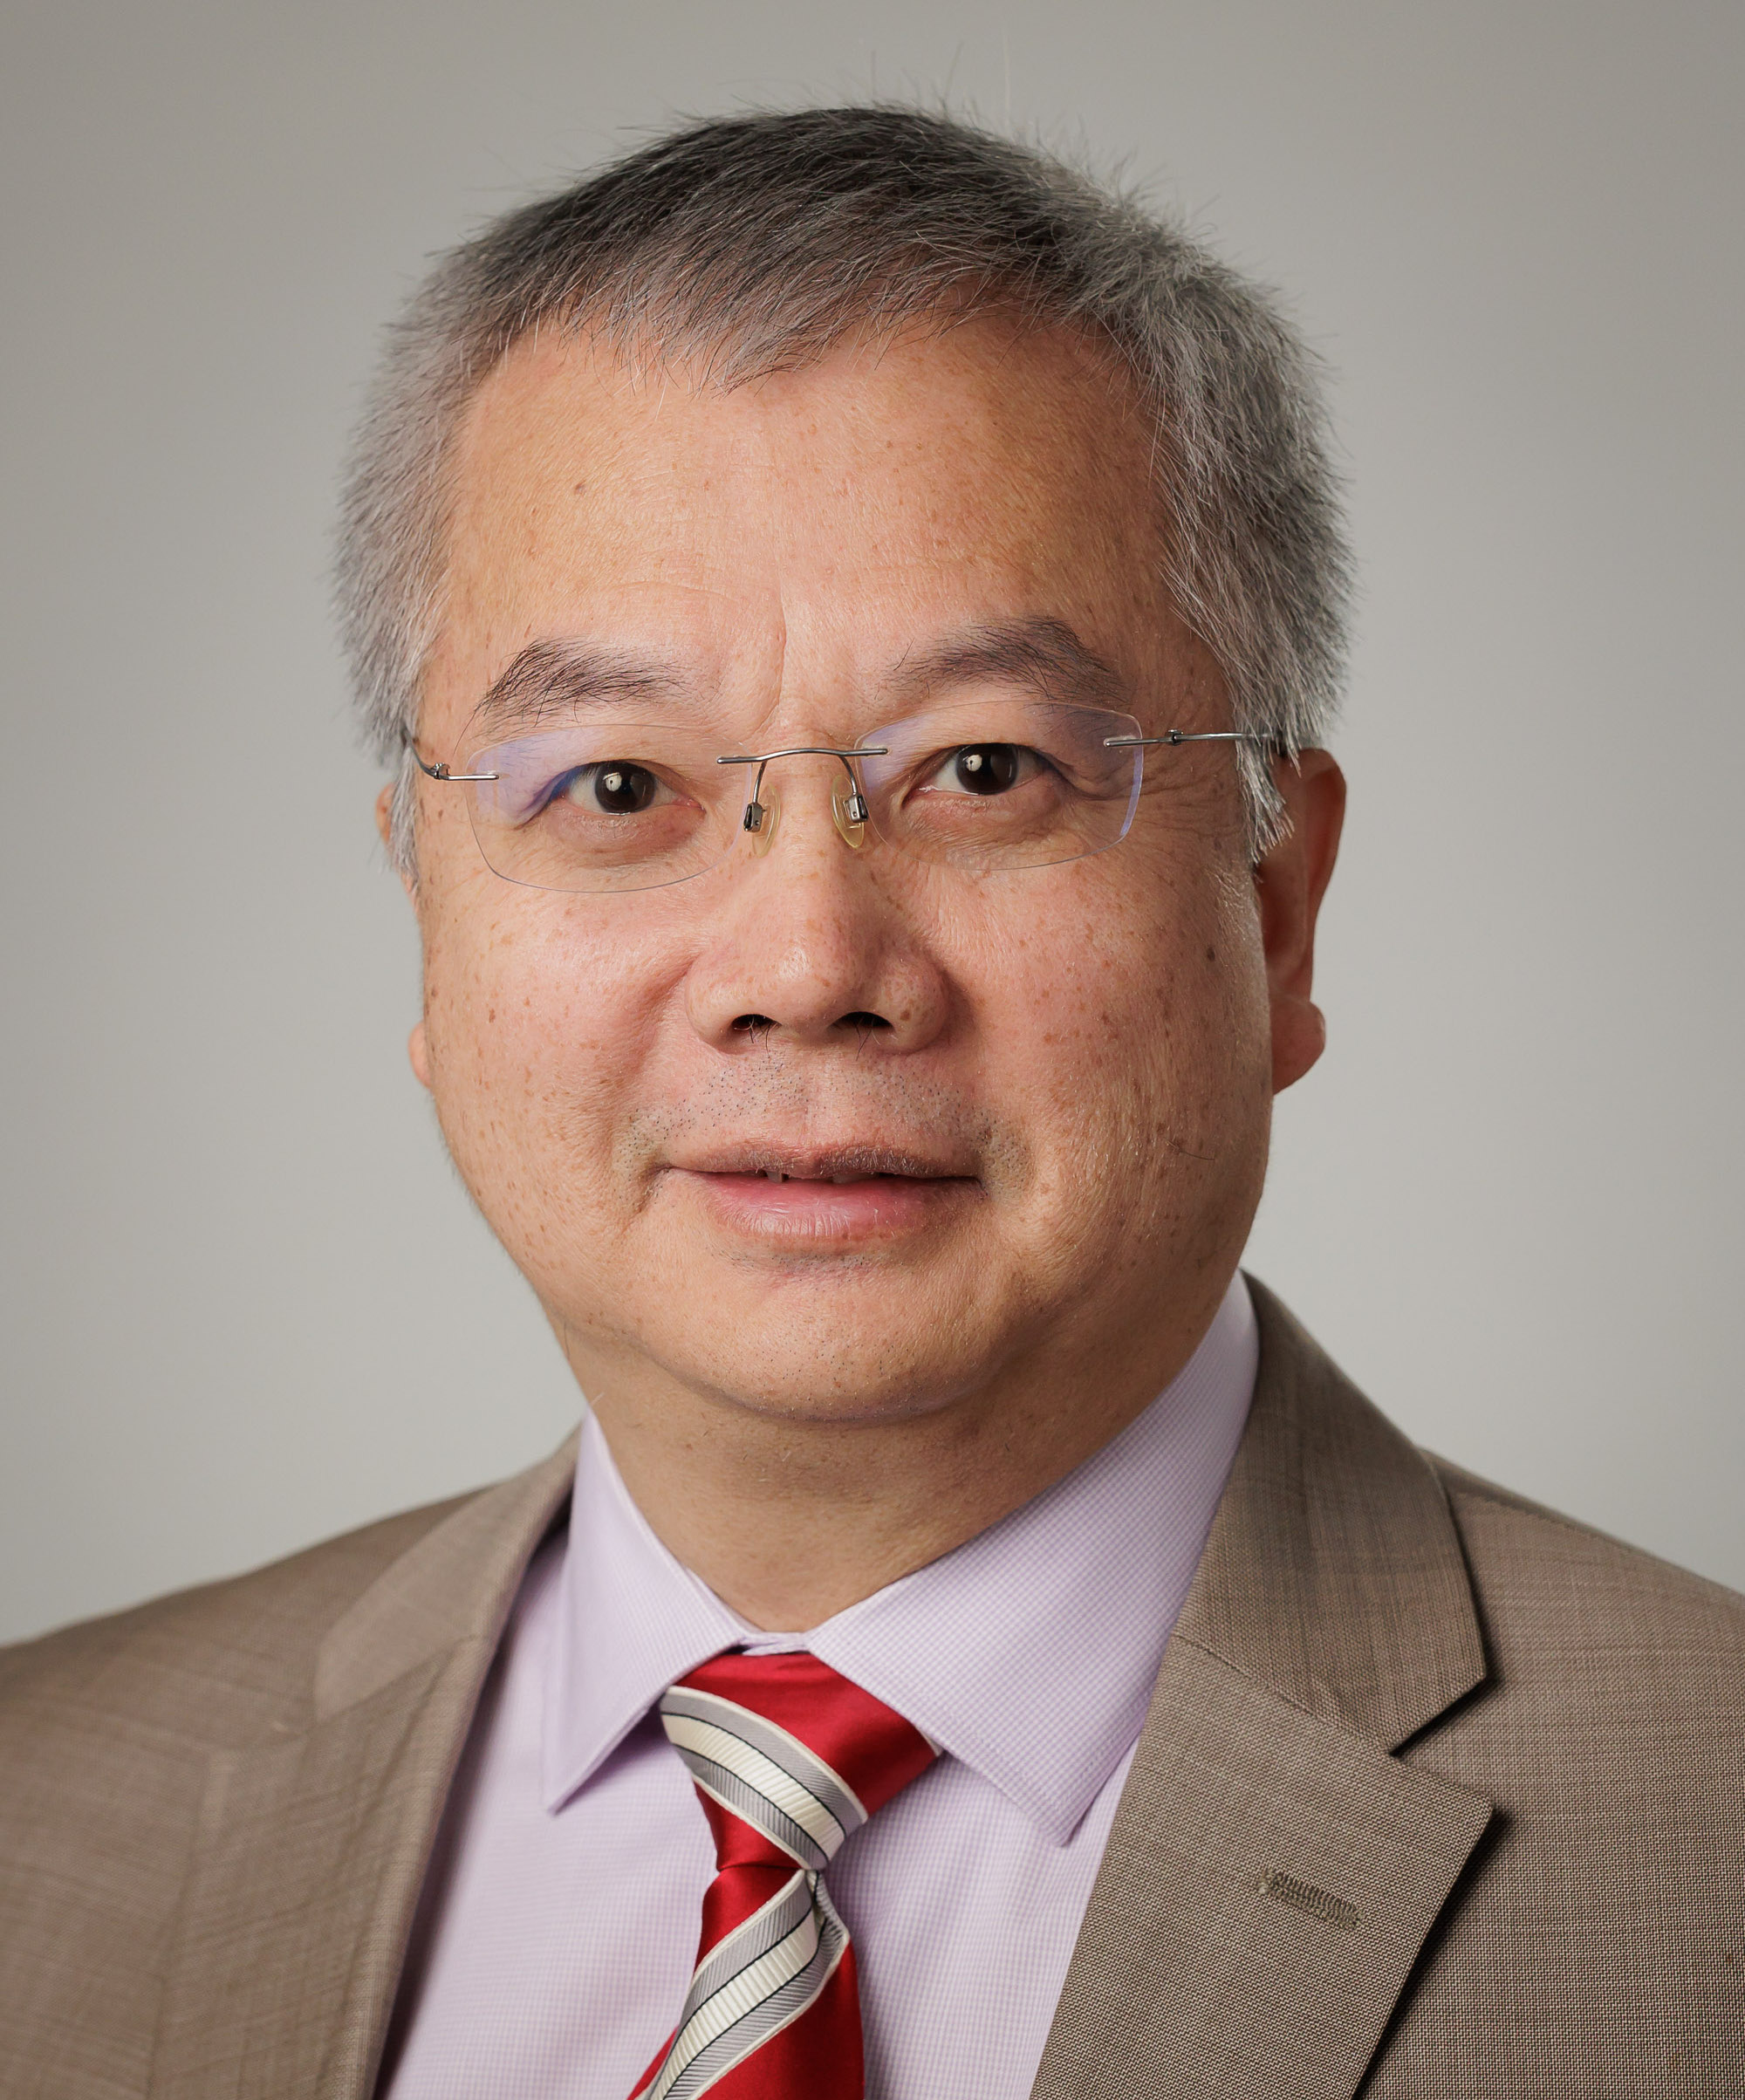 Dr. Chengshan Xiao